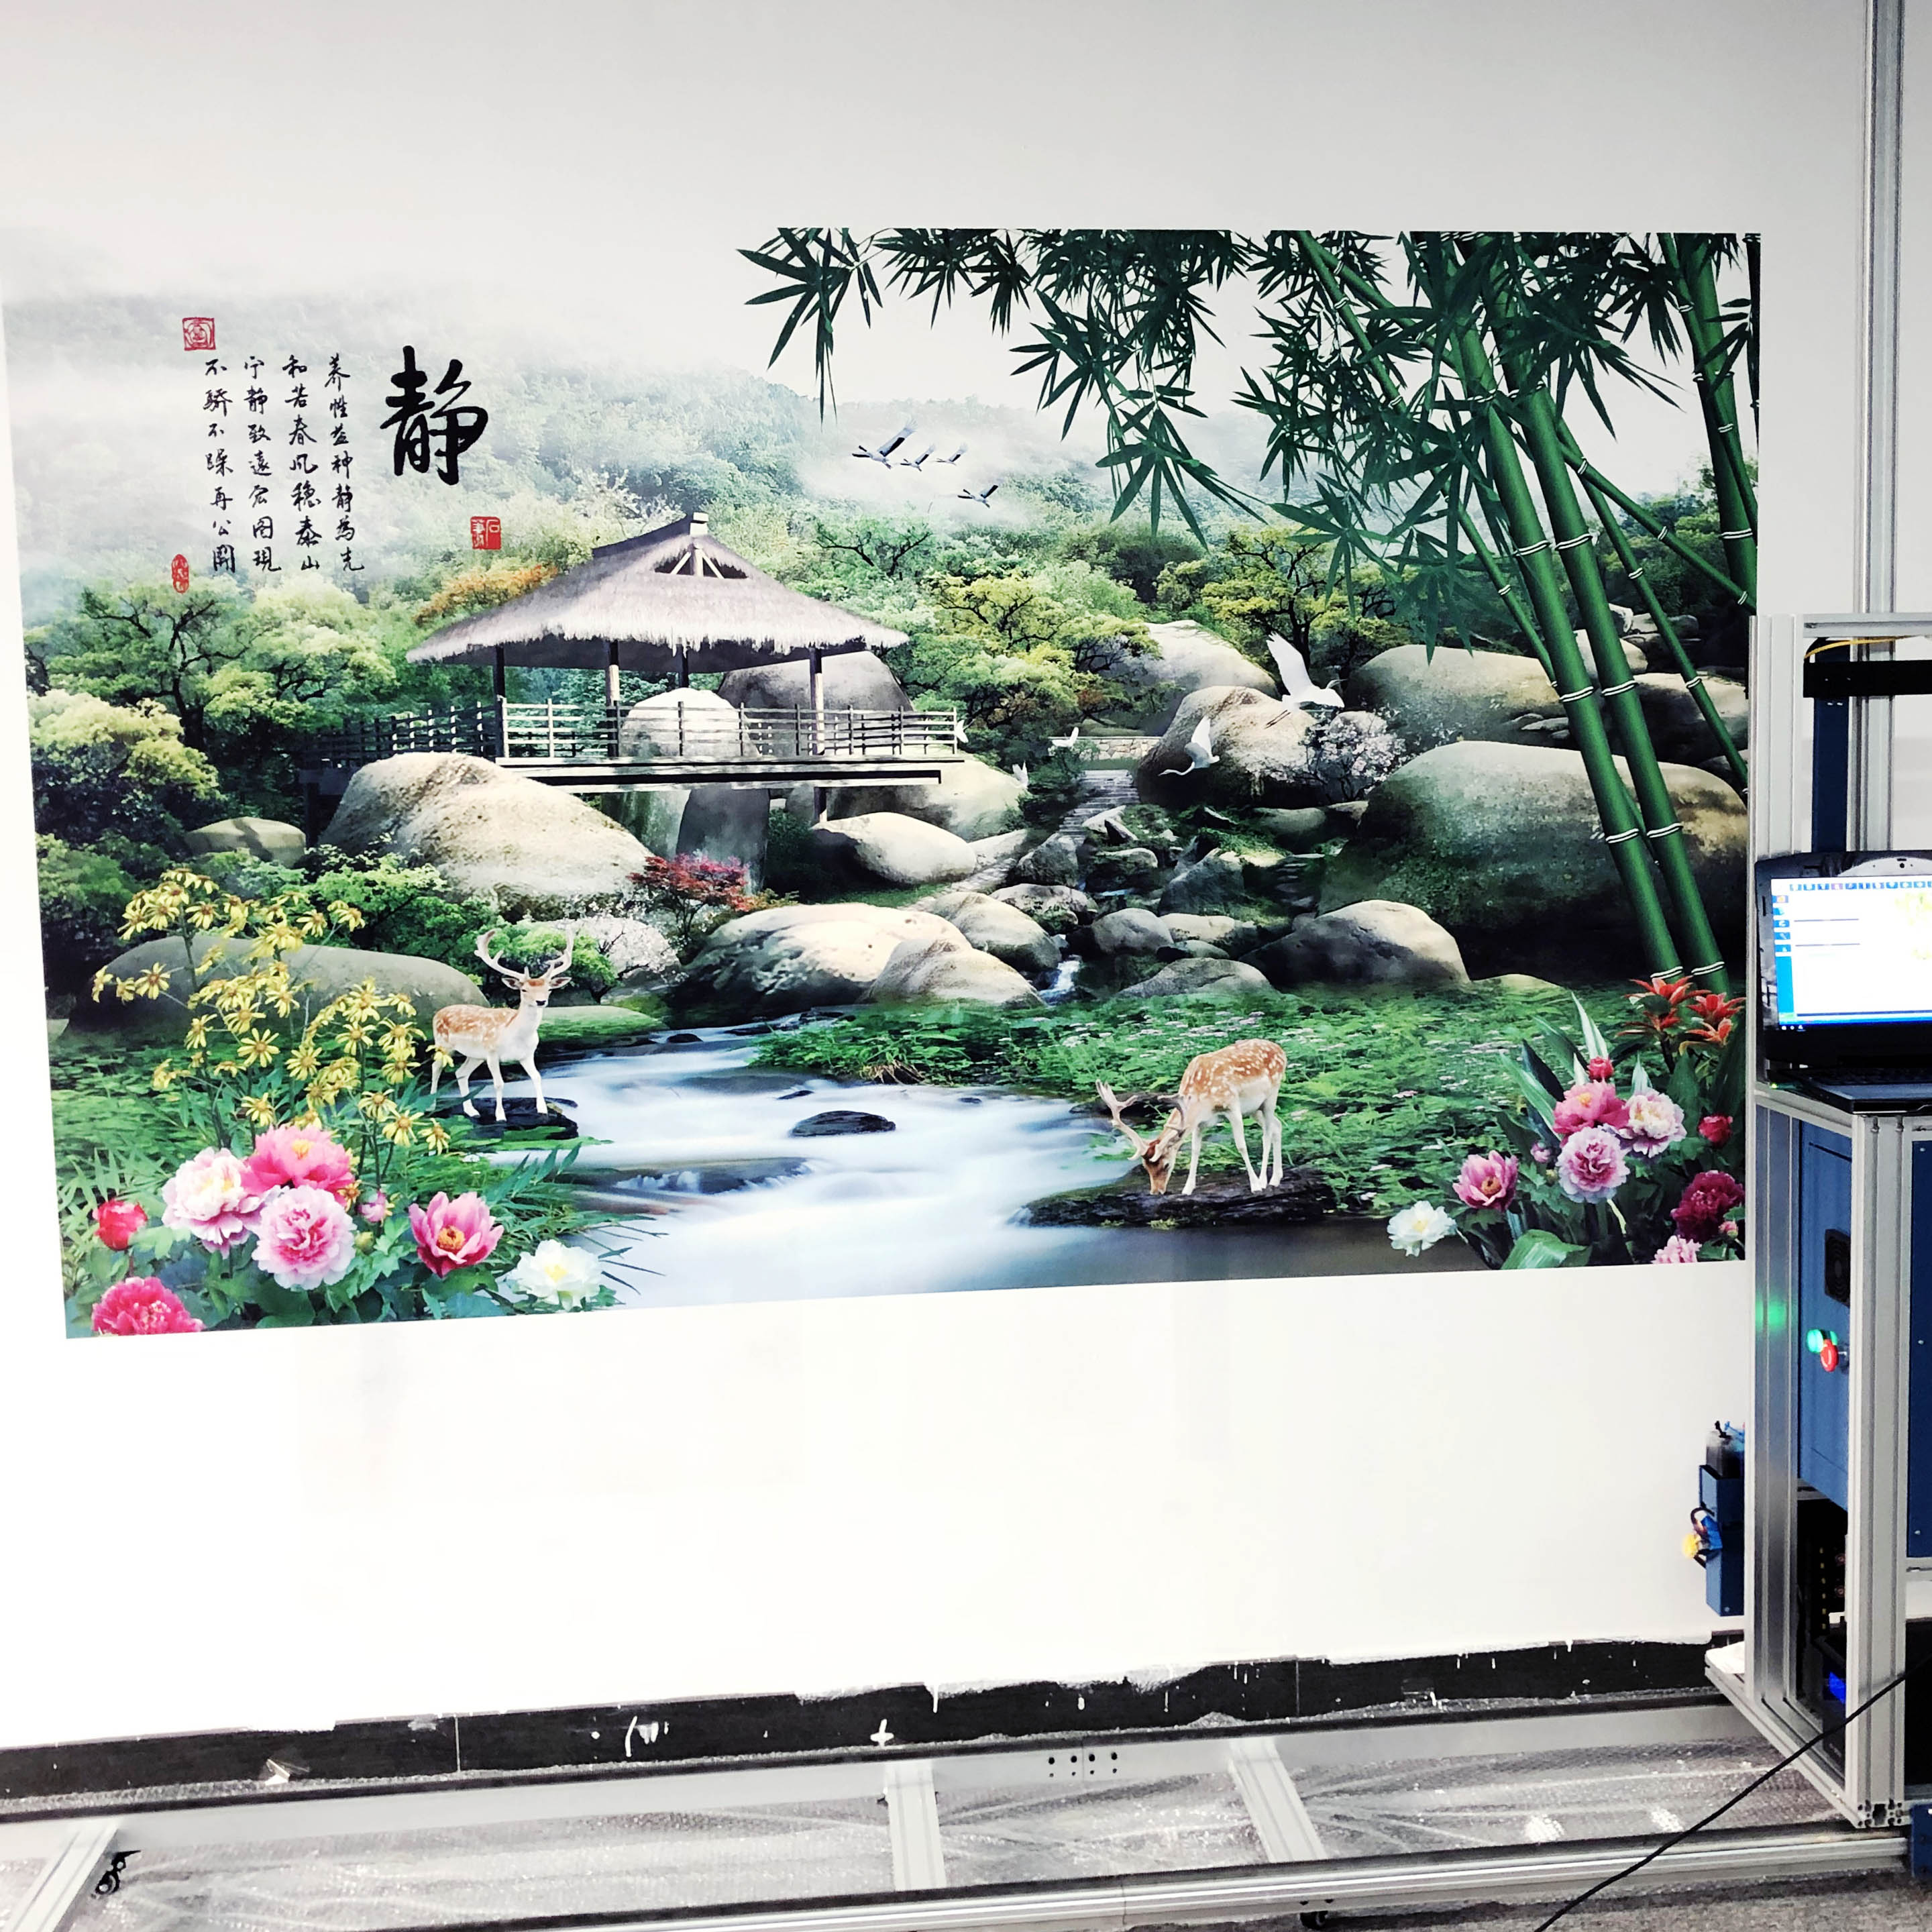 深圳市5D墙画广告彩绘机3D墙体彩绘机厂家5D墙画广告彩绘机3D墙体彩绘机背景墙绘画机壁画机喷绘机创业设备